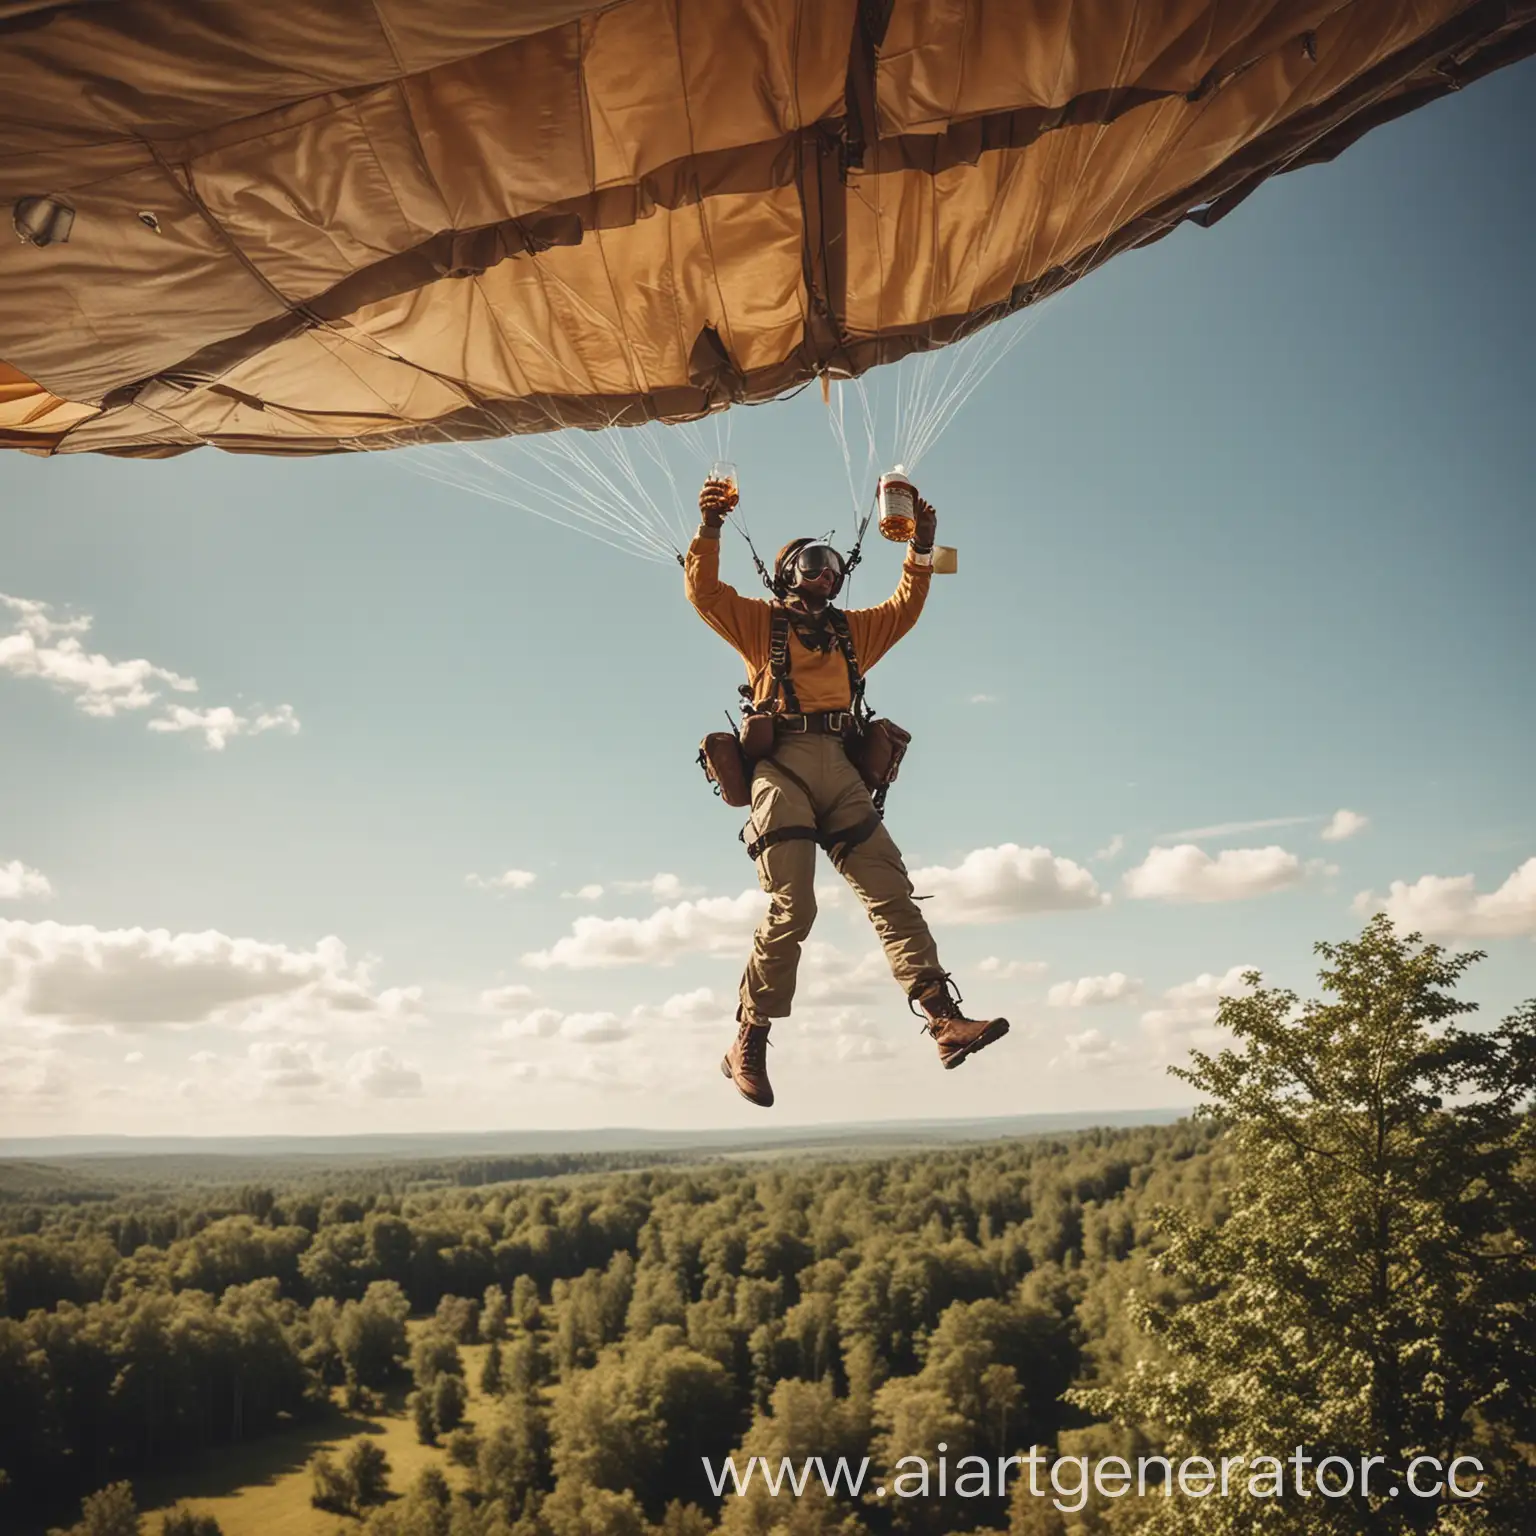 реальное фото. человек прыгает с самолета с парашутом, в руках держит бутылку виски в другом коктейль. видно самолет и внизу лес
